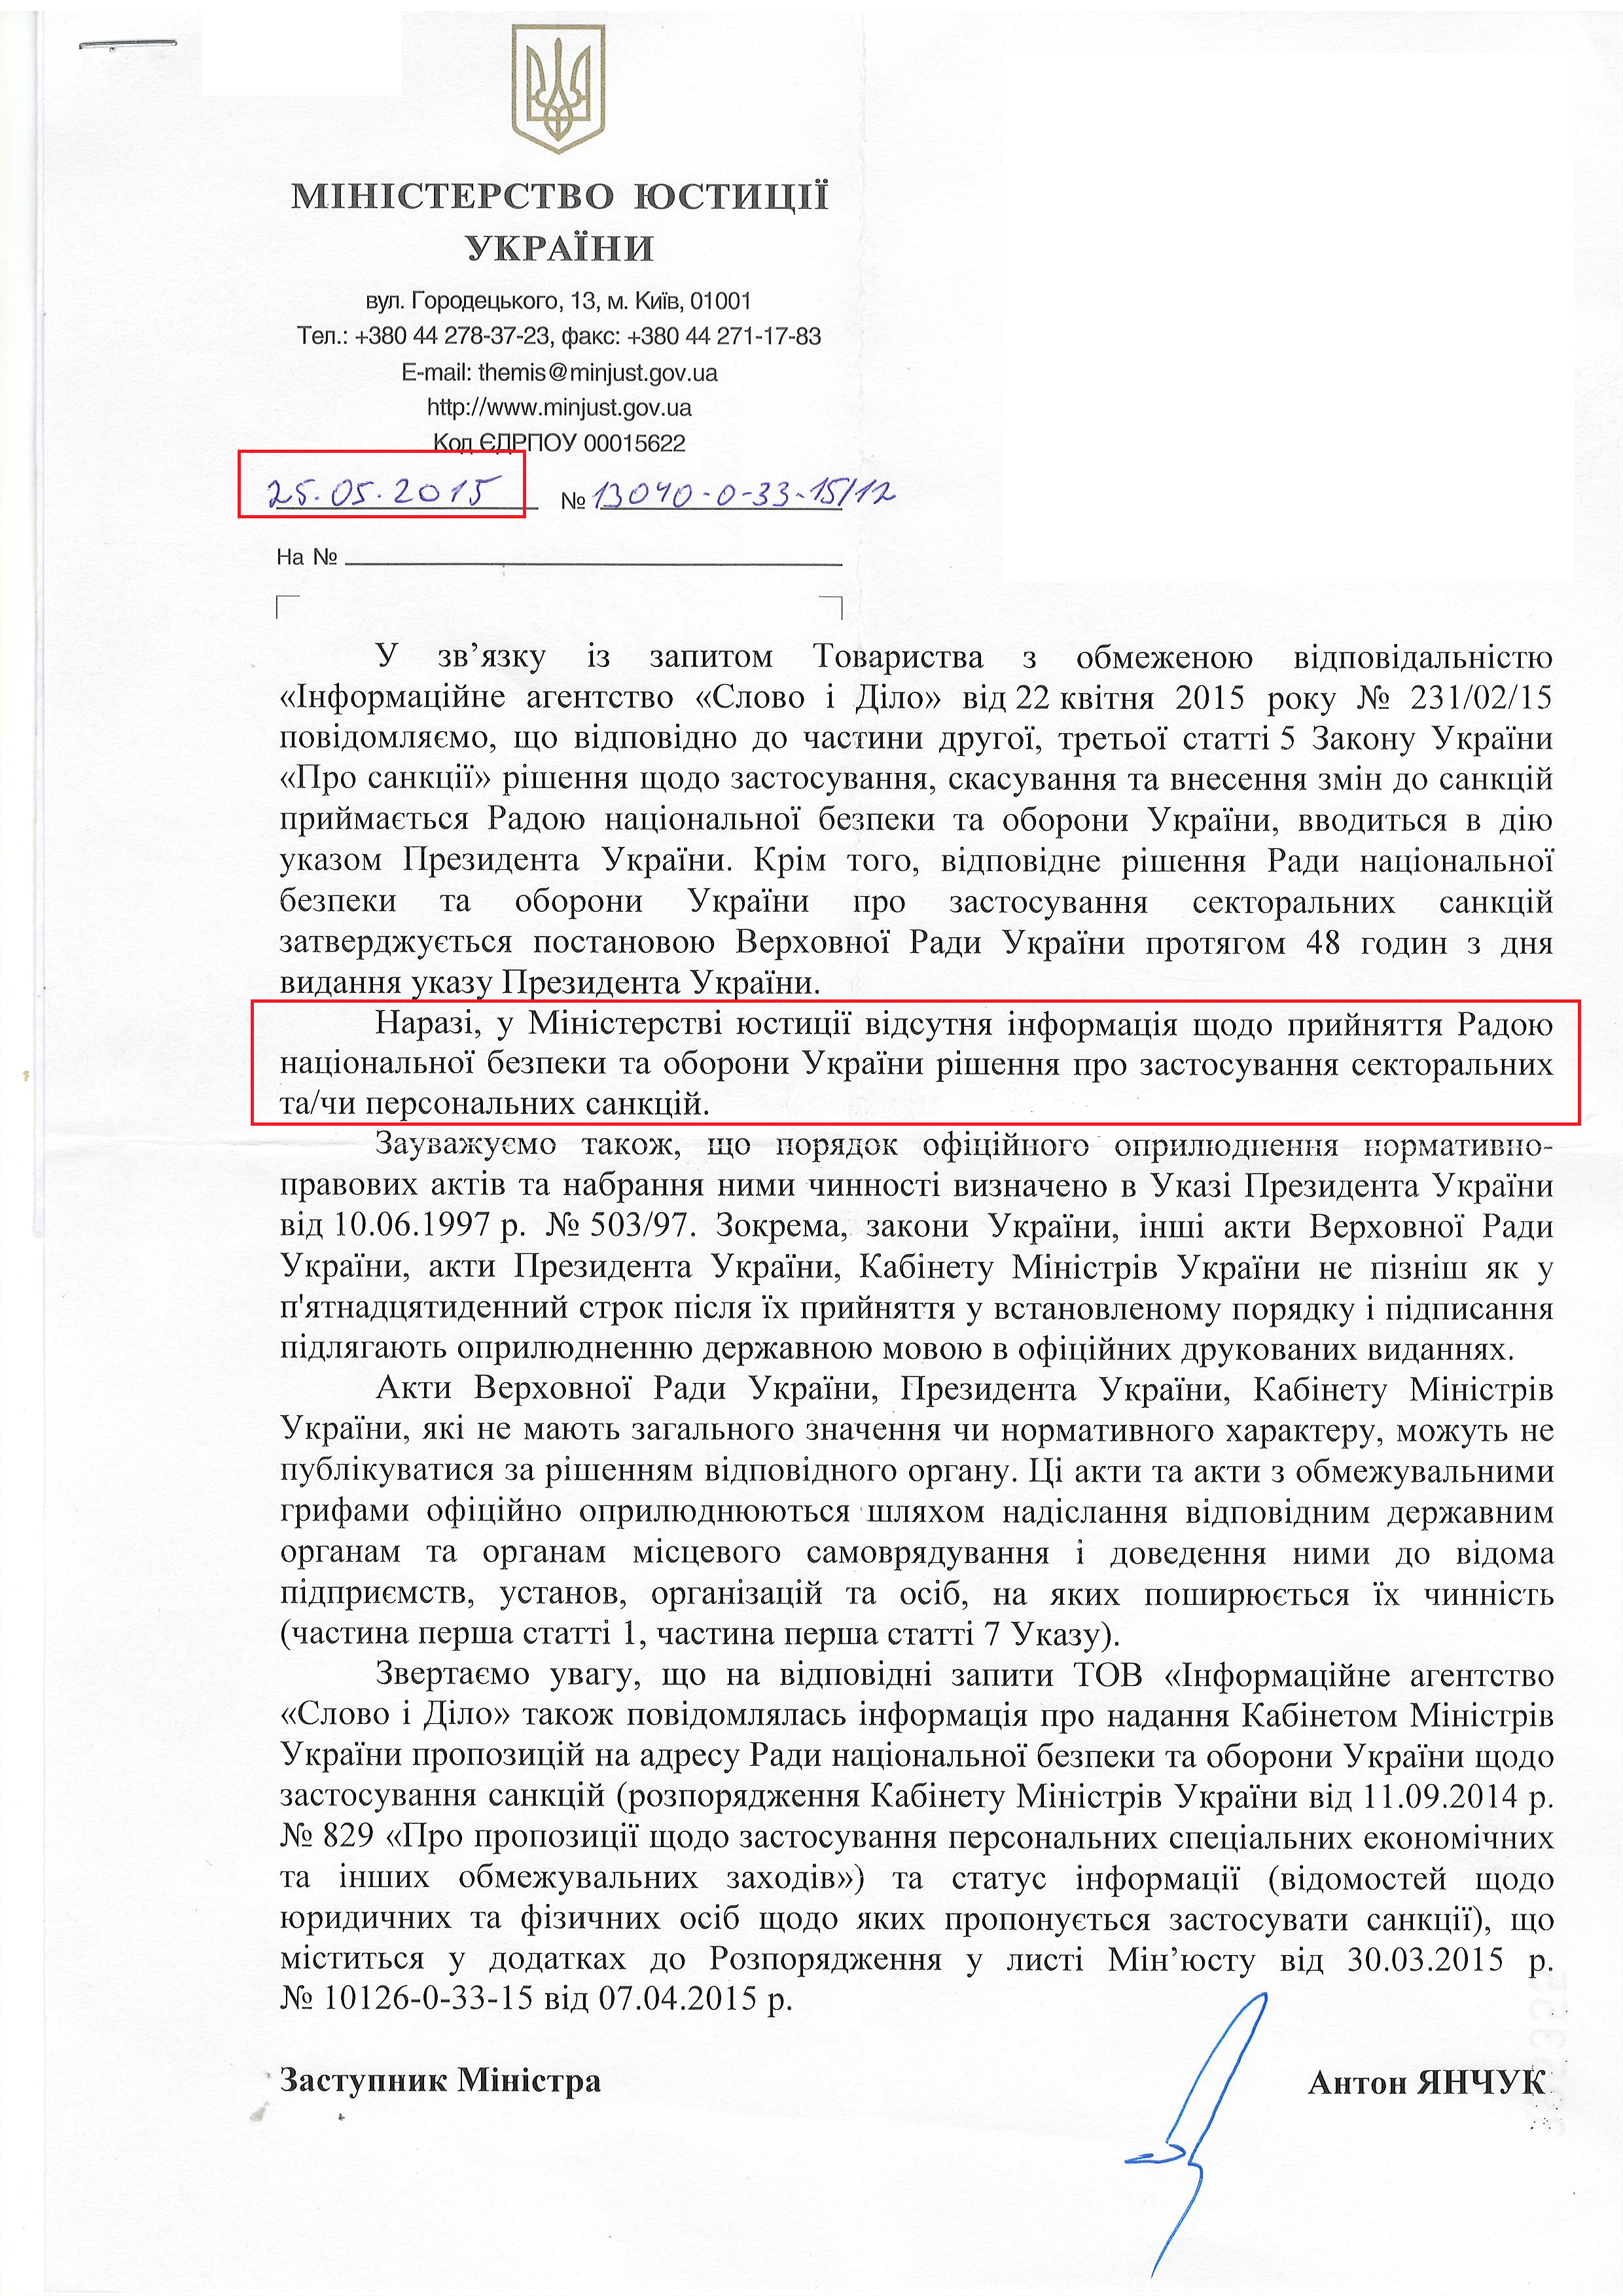 Лист Міністерства юстиції України від 25 травня 2015 року